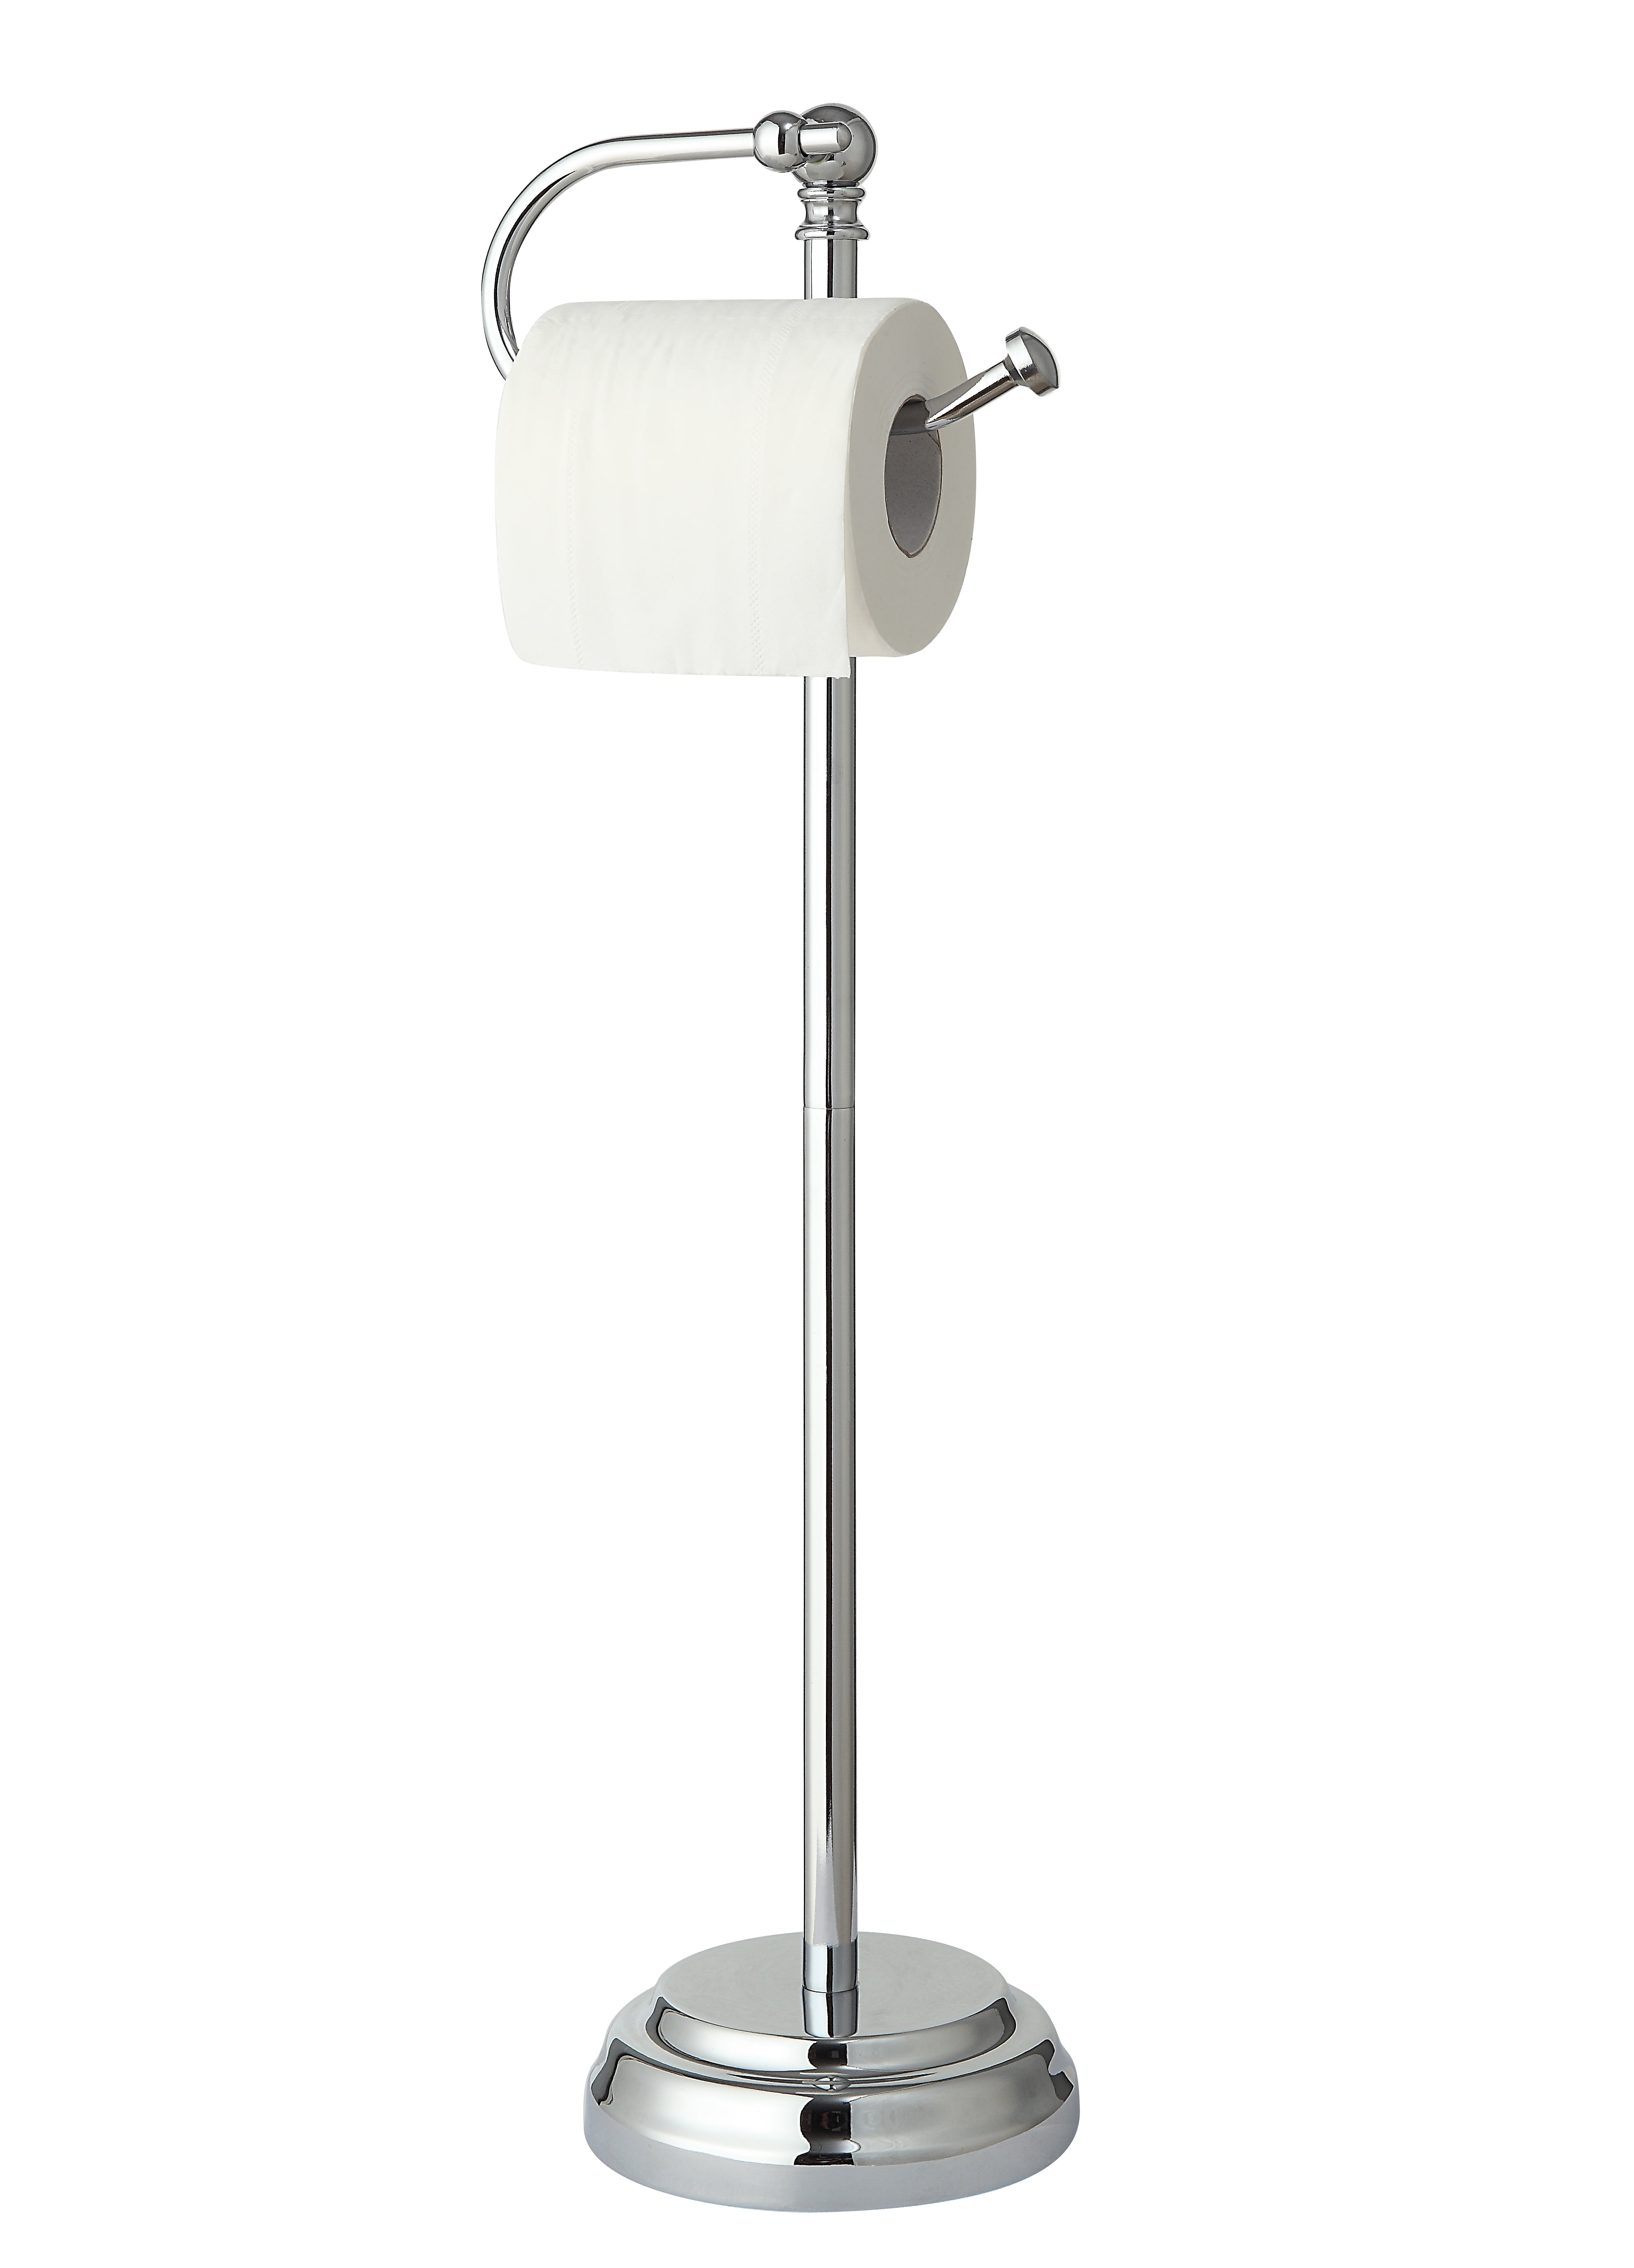 Toilet Roll Holder Paper Holder Free Standing Chrome Bathroom Toilet 